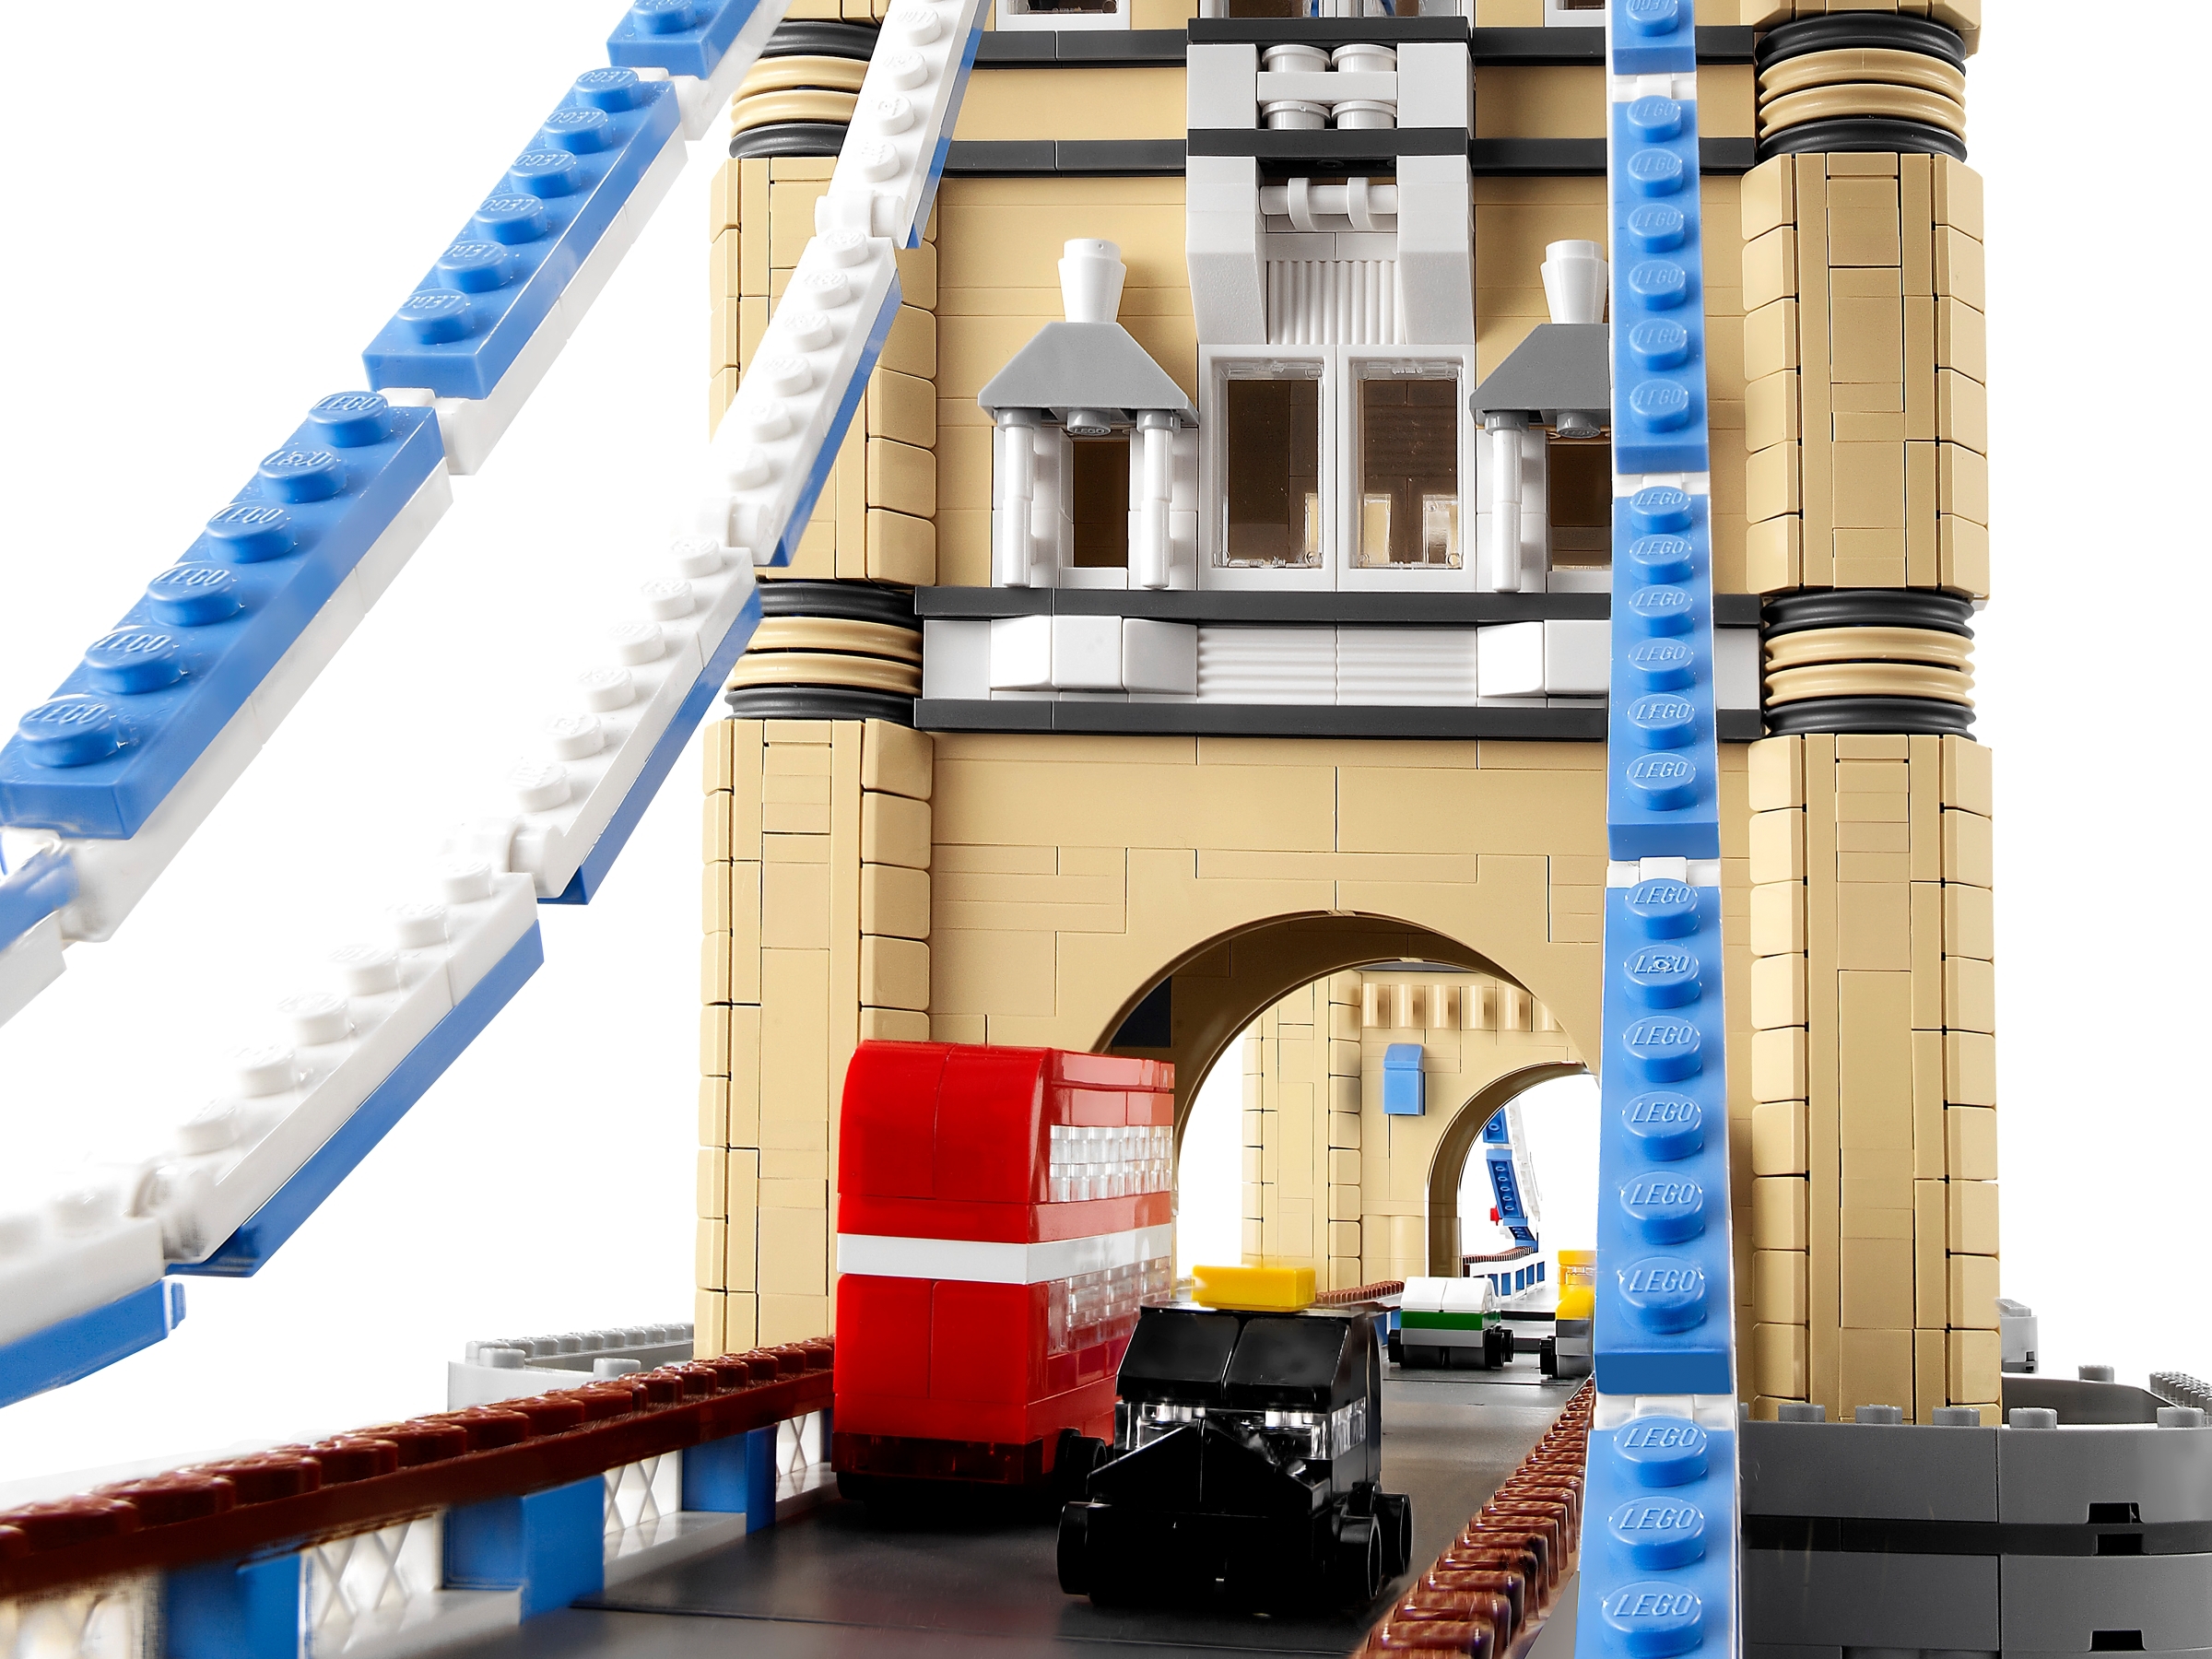 Le Tower Bridge 10214 | Creator Expert | Boutique LEGO® officielle CA